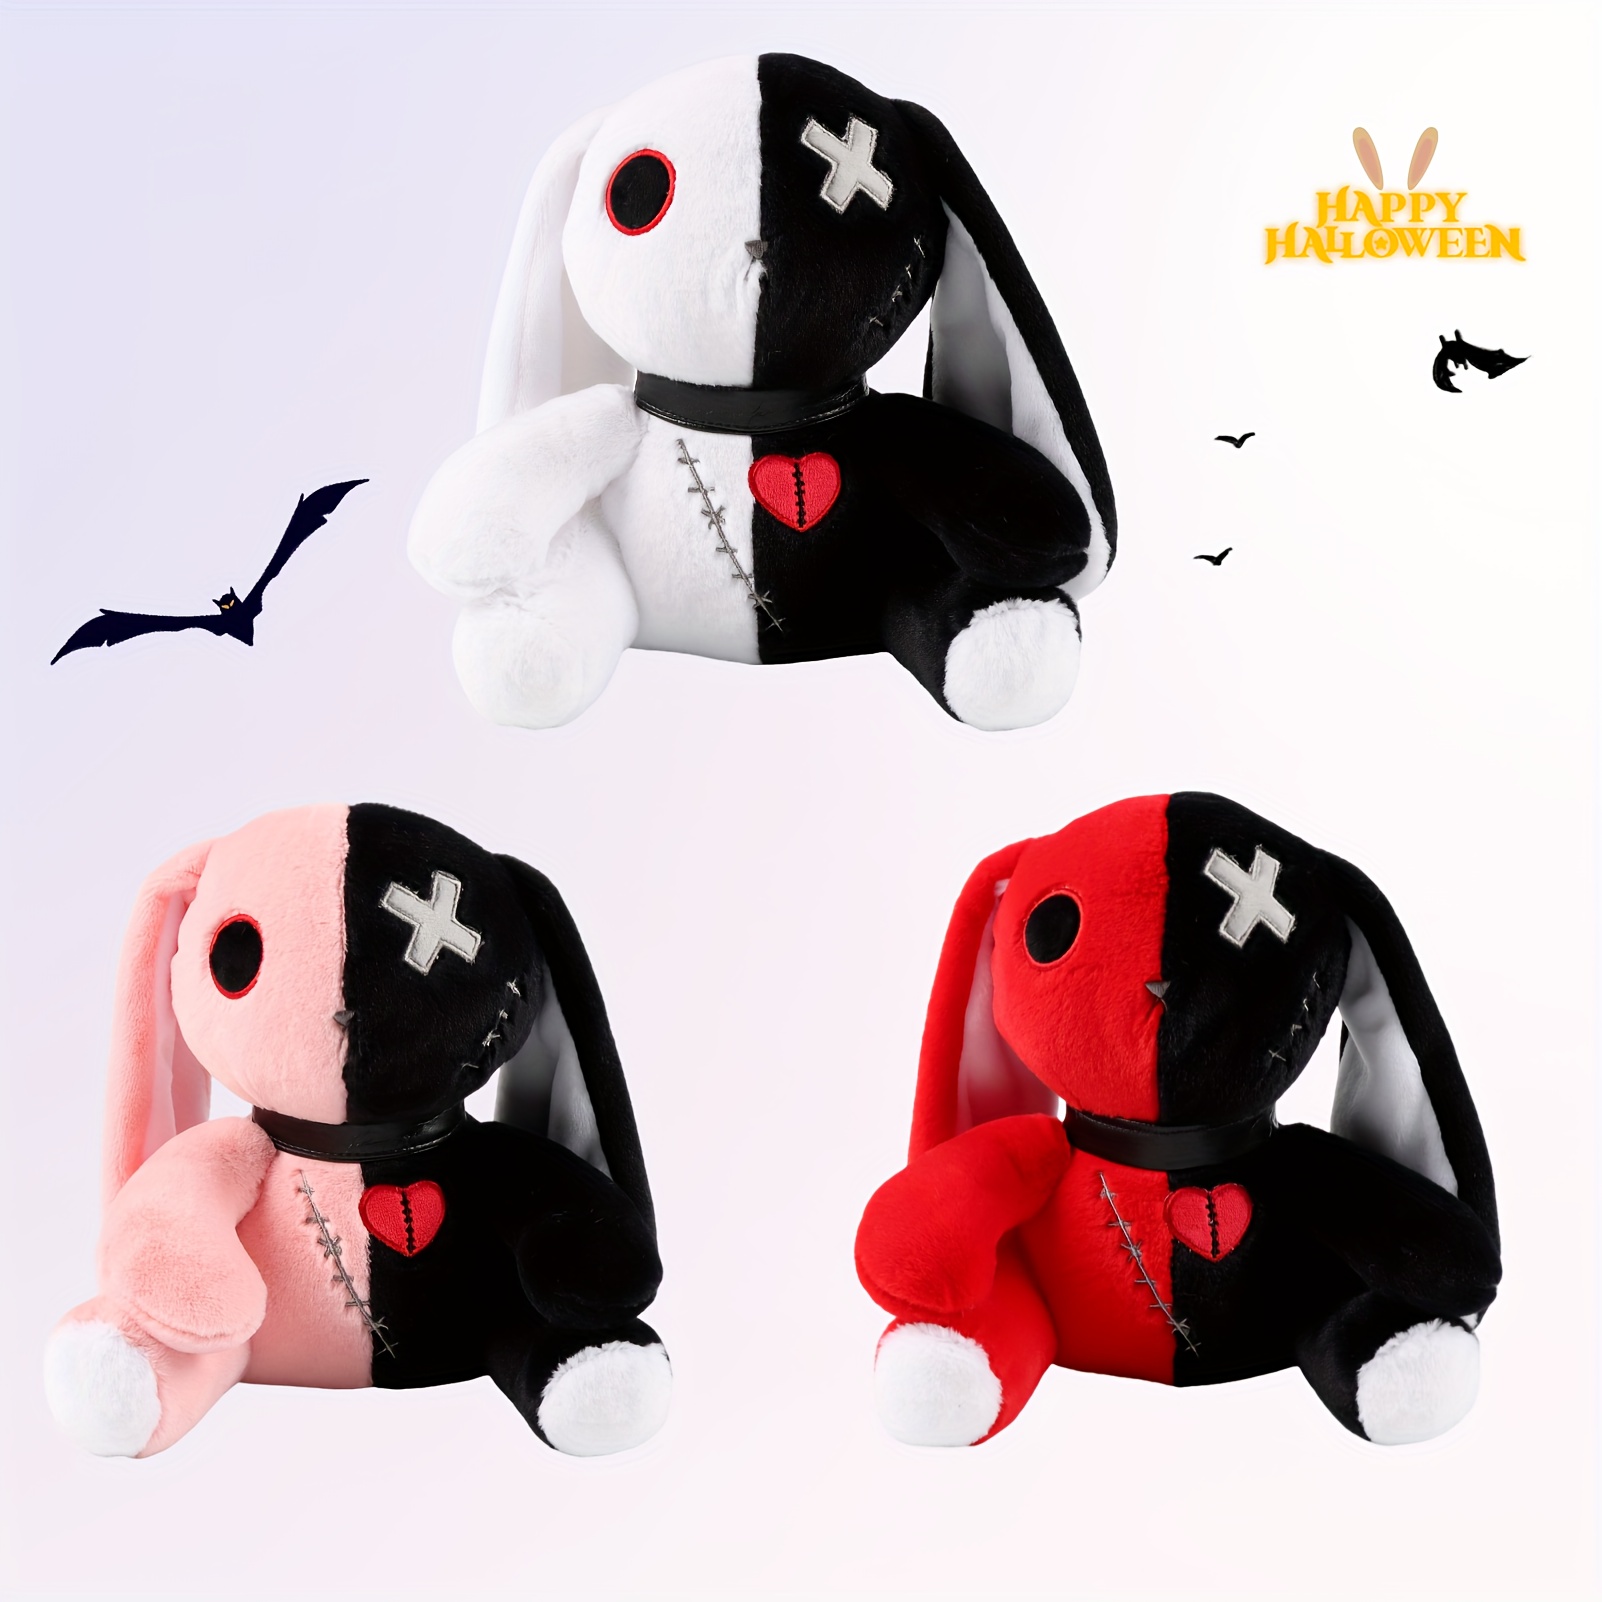  LKMYHY 12 Creepy Goth Bunny Plush - Spooky Stuffed